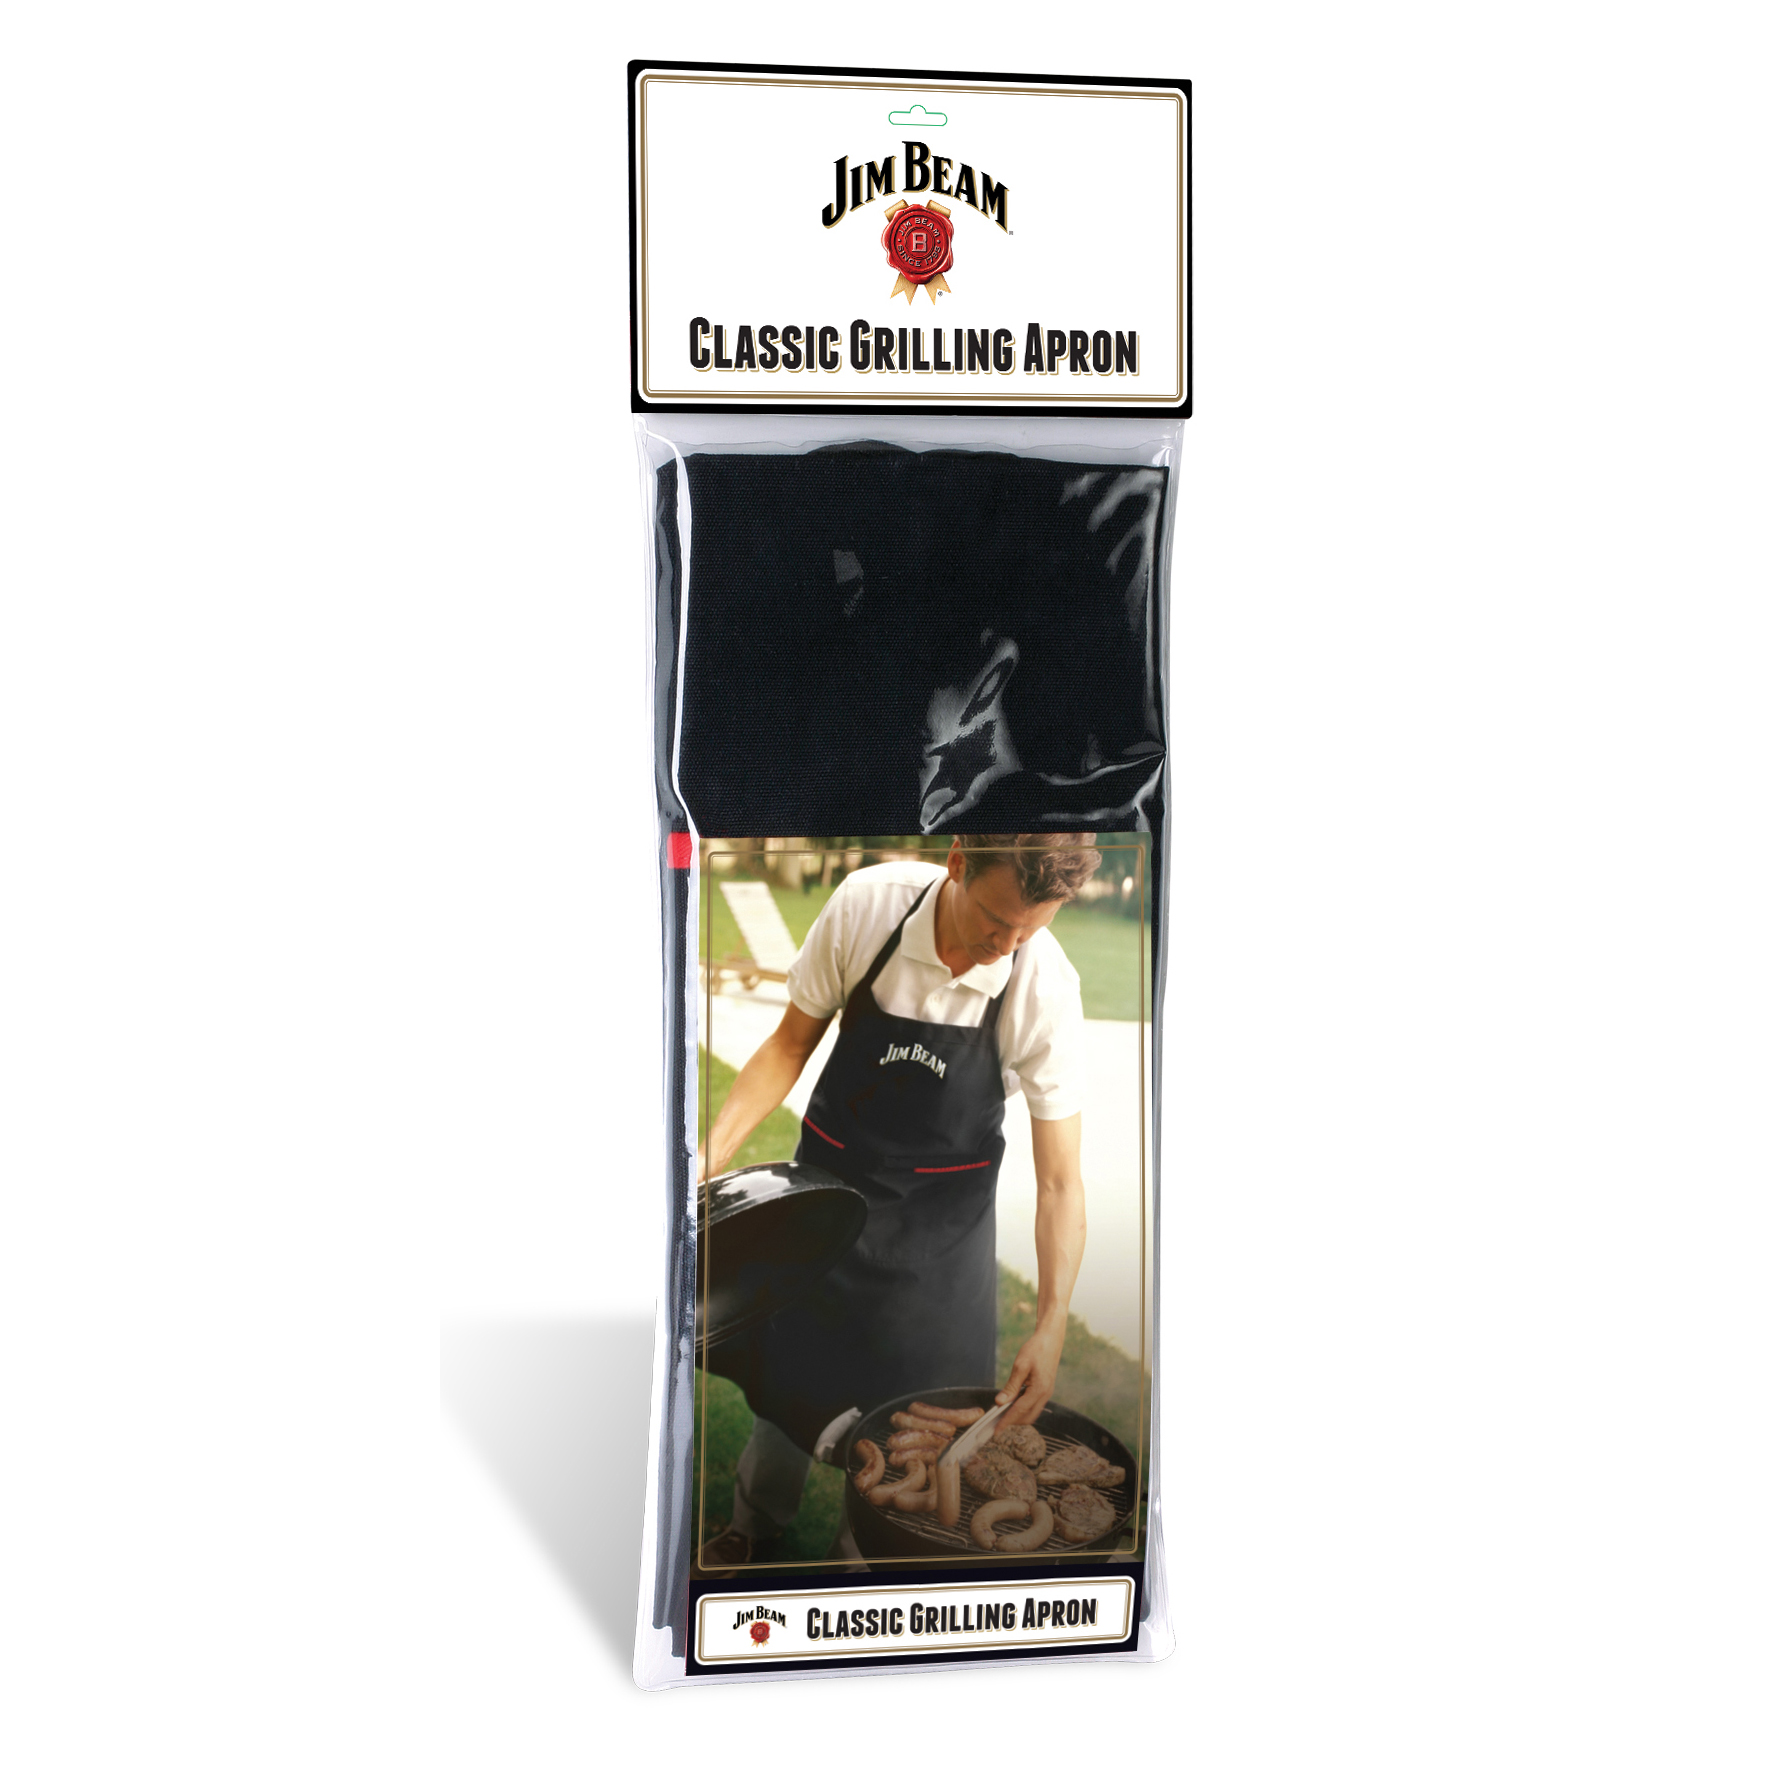 Grillschürze, Kochschürze mit Jim Beam Logo, 2 Taschen, Unisex, schwarz, trend für Männer, Frauen,  bestseller Schürze, Jim Beam JB0238